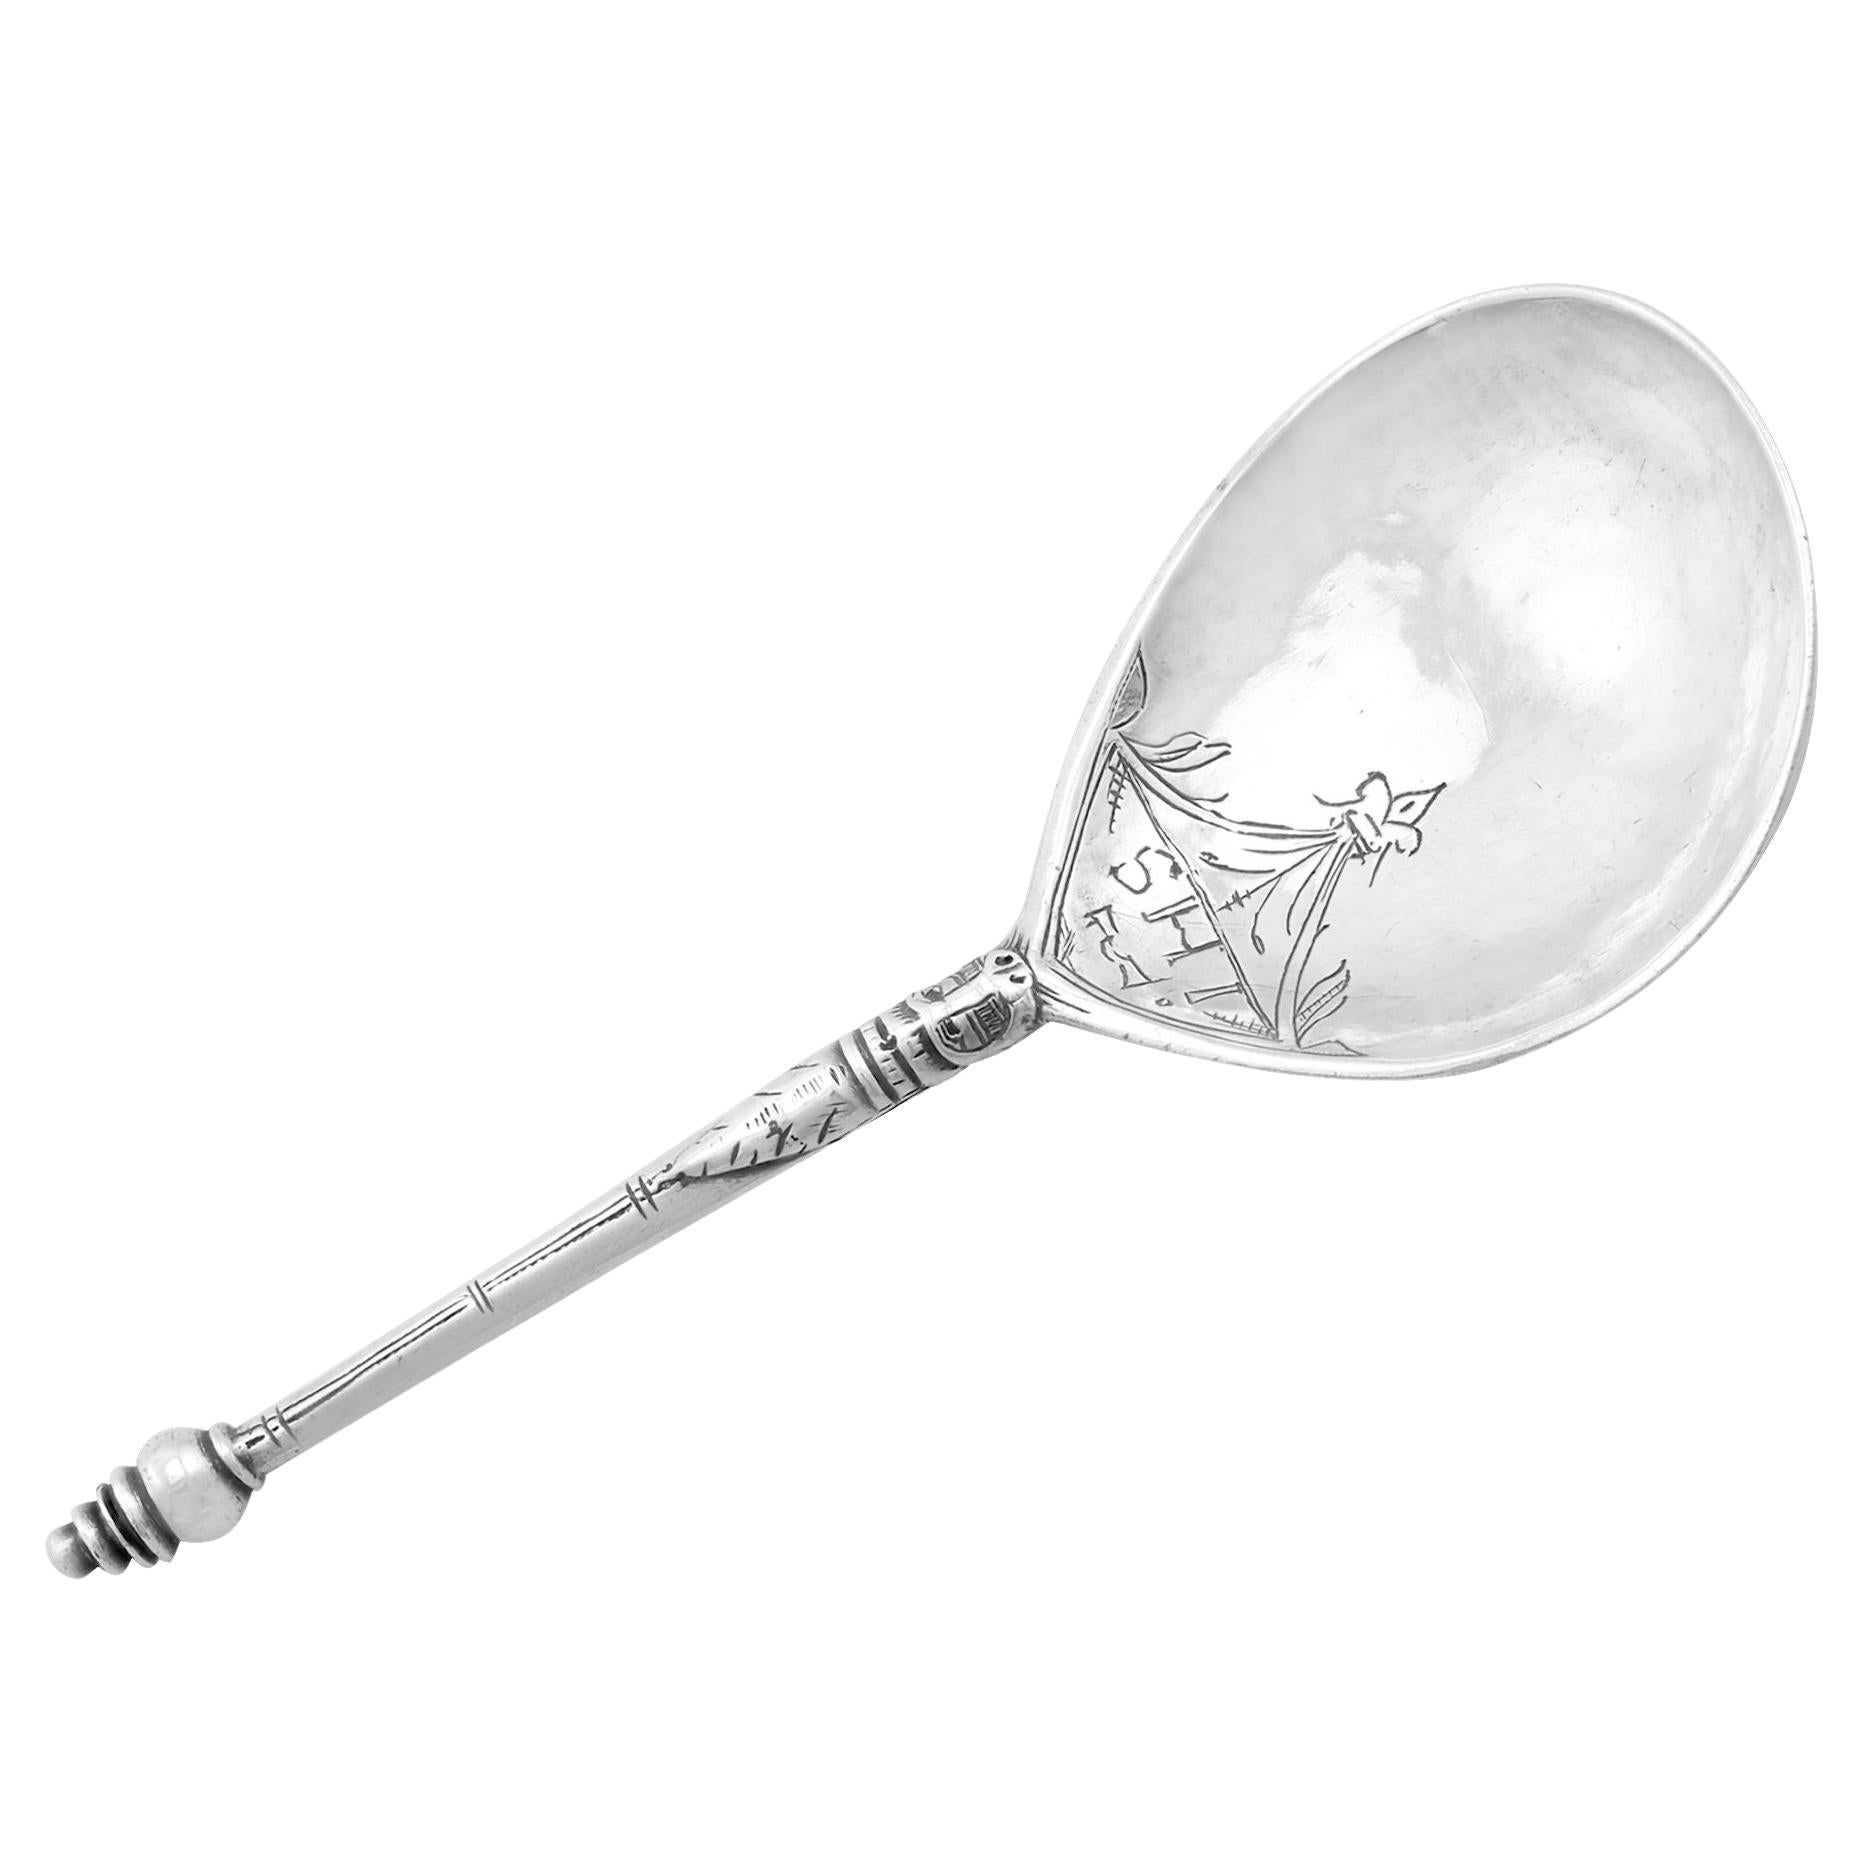 Antique Norwegian Silver Spoon, Circa 1650